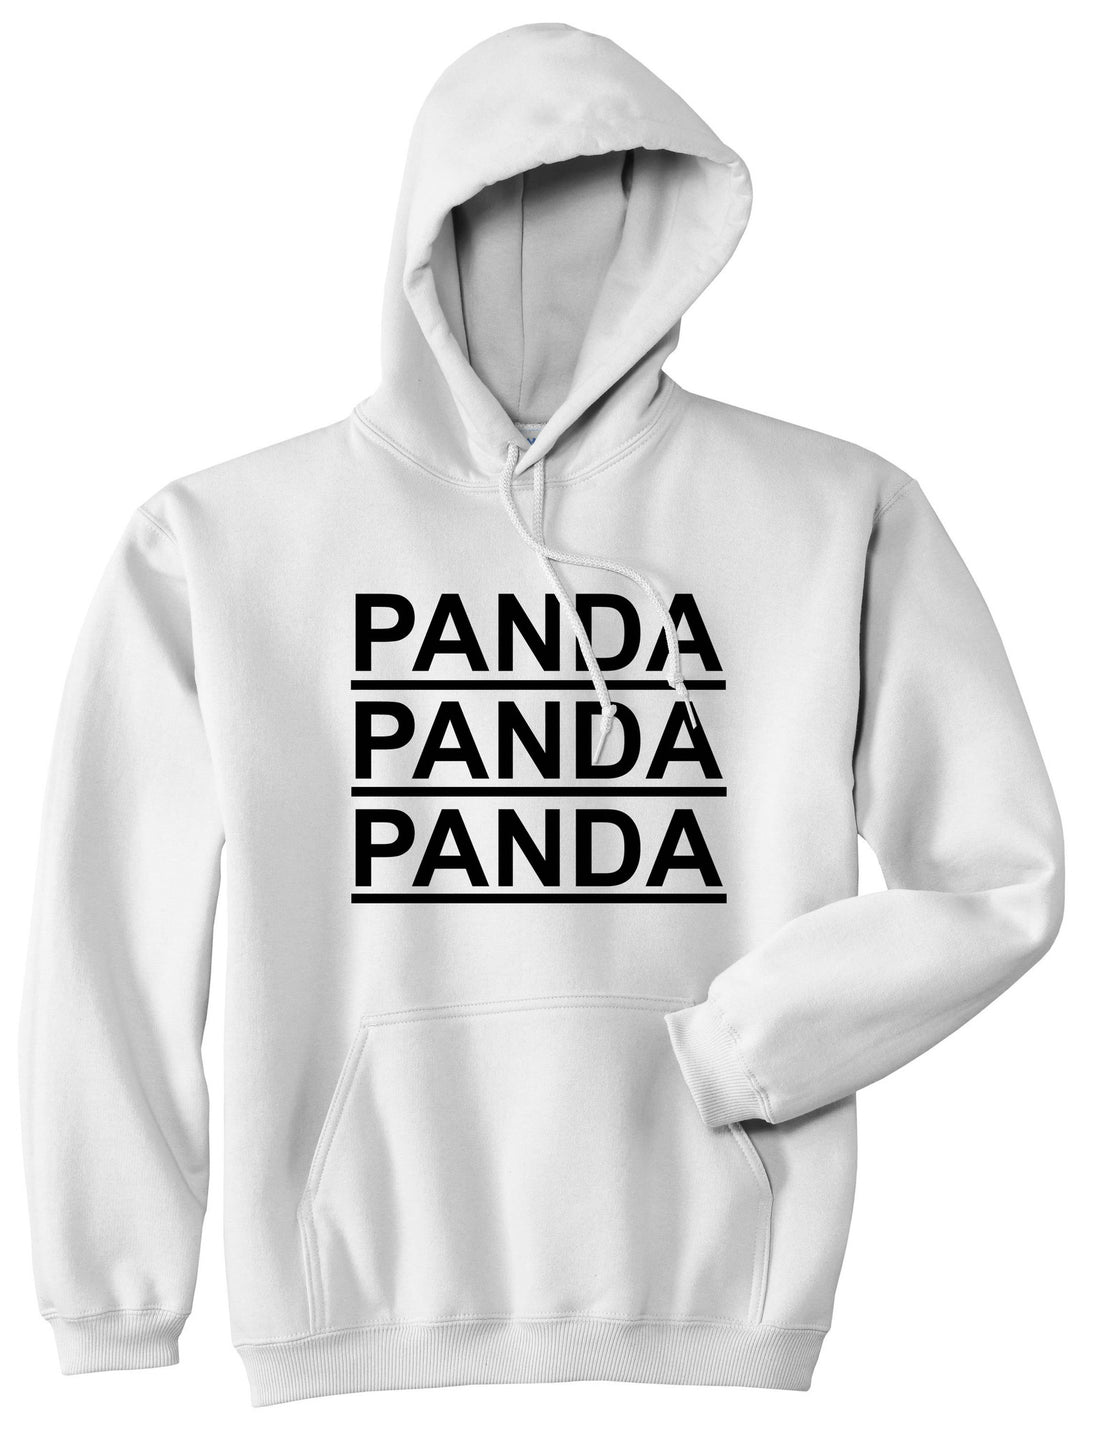 Panda Panda Panda Pullover Hoodie